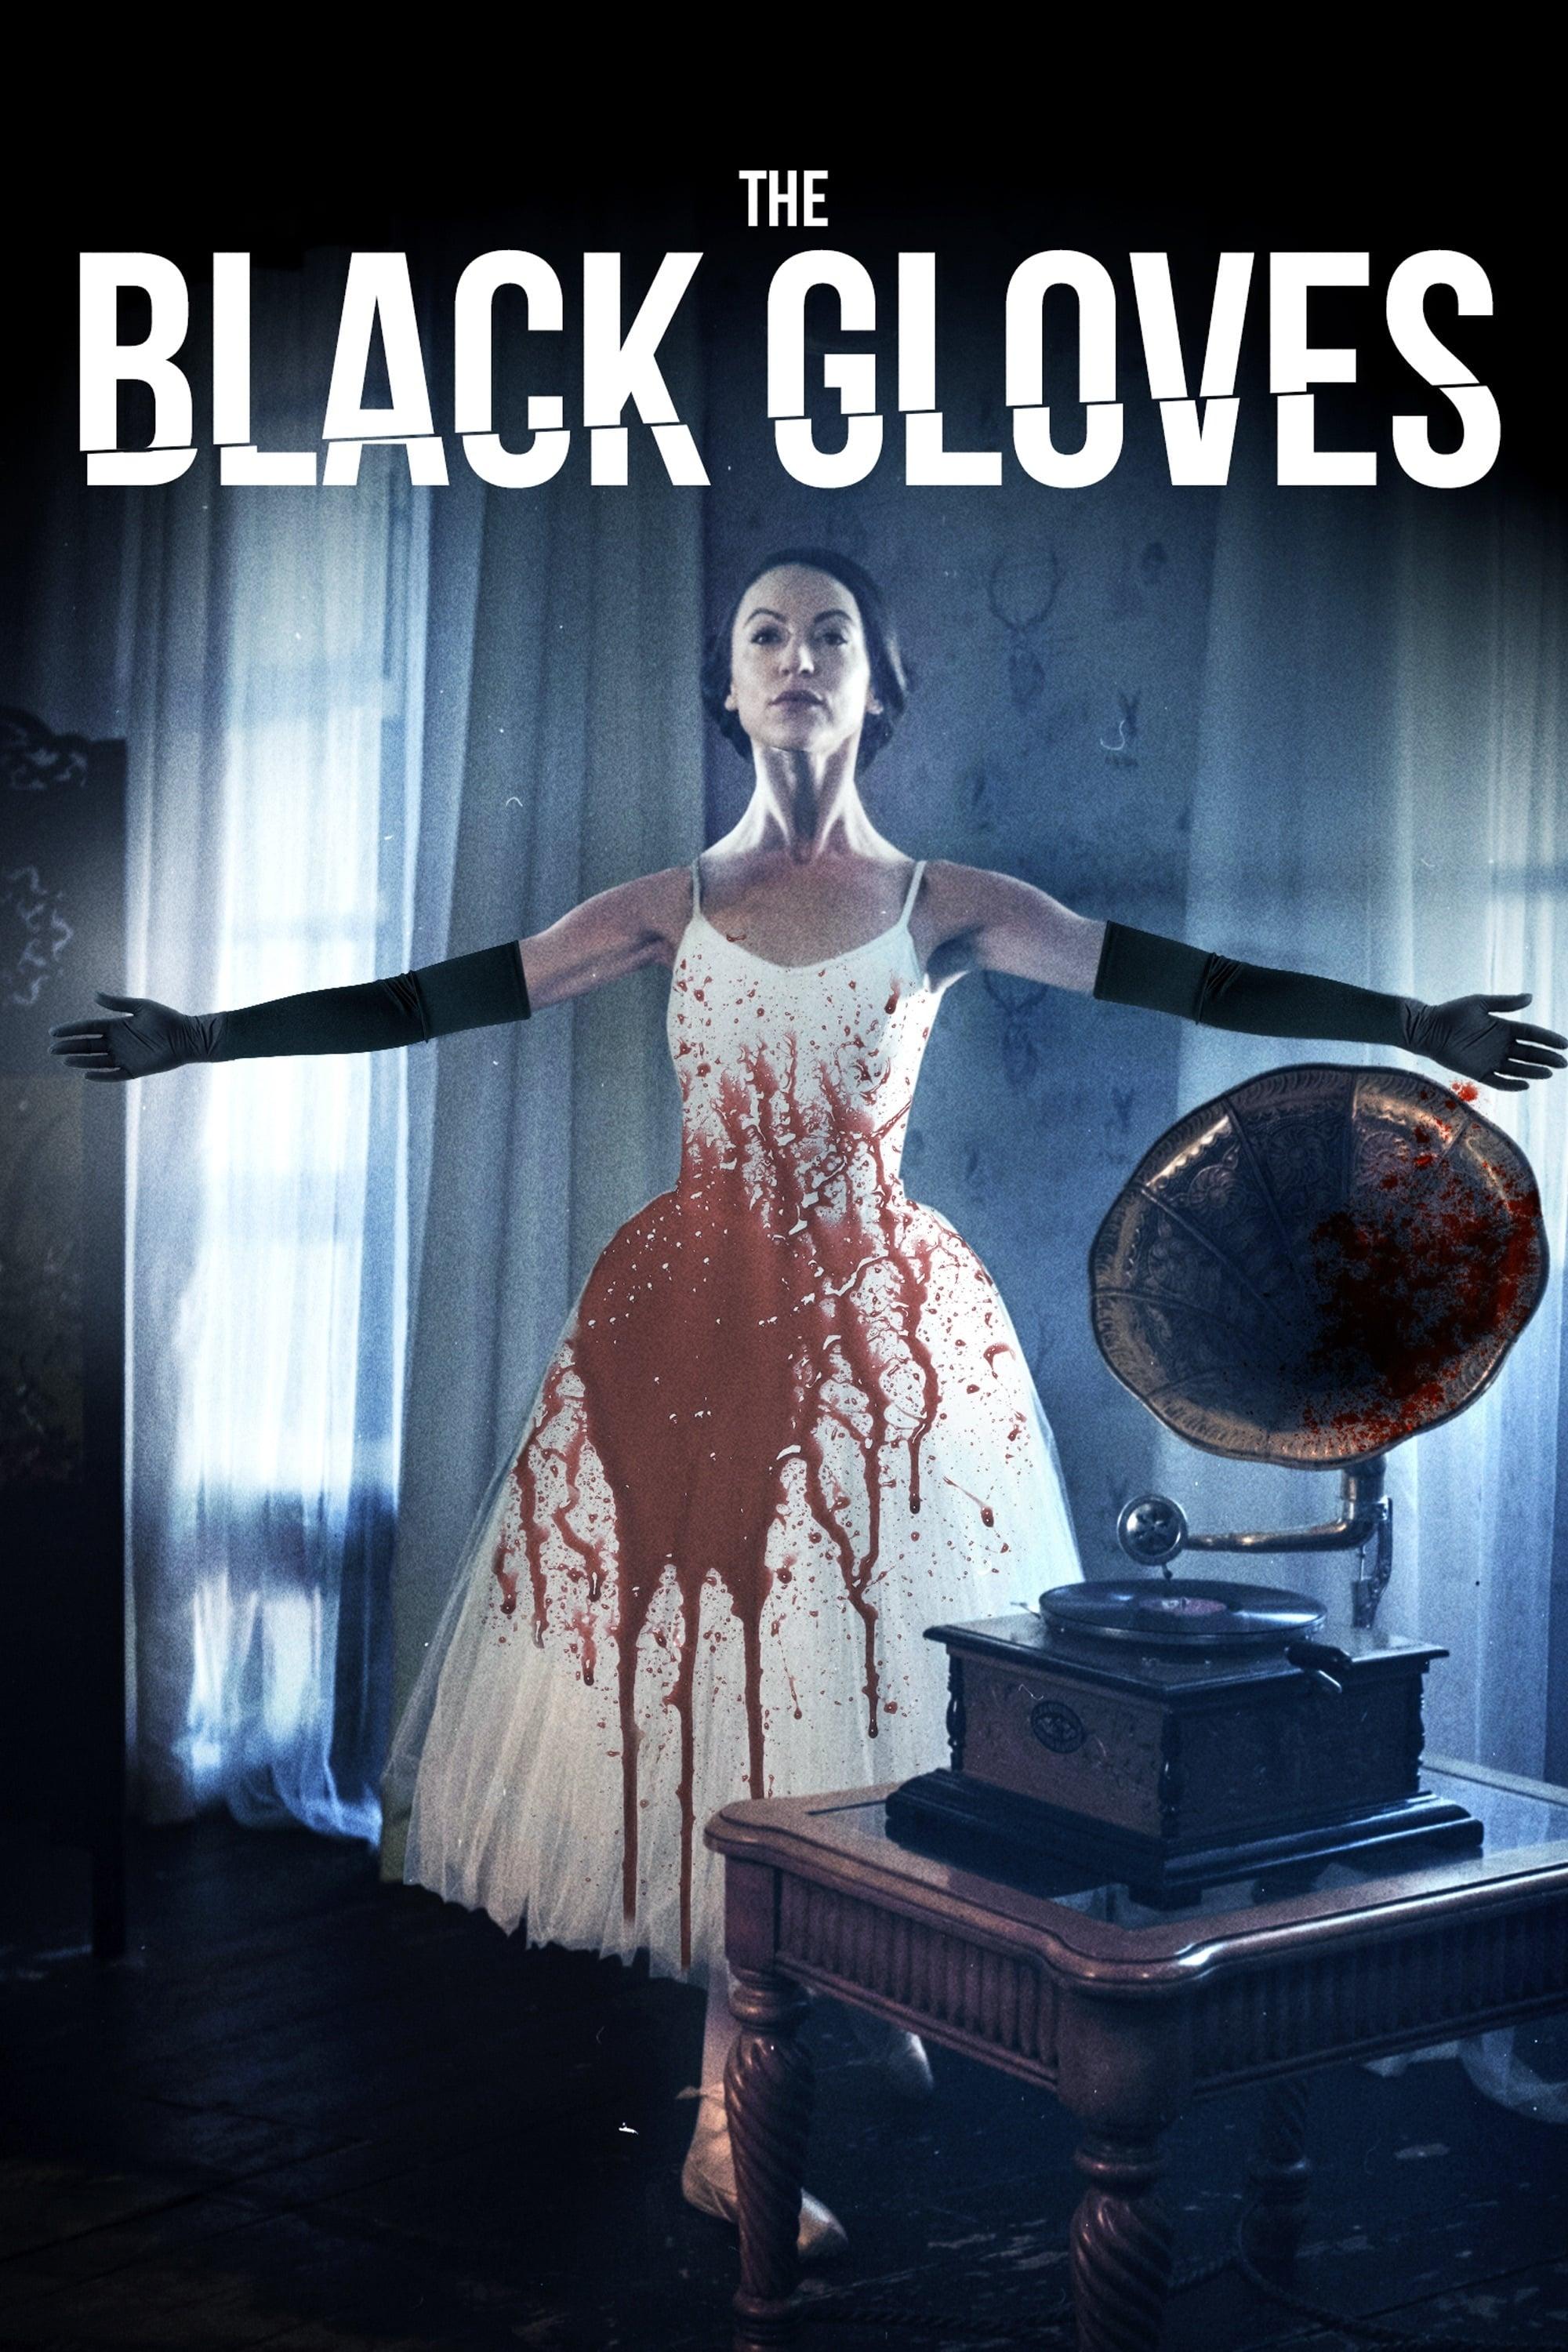 The Black Gloves poster